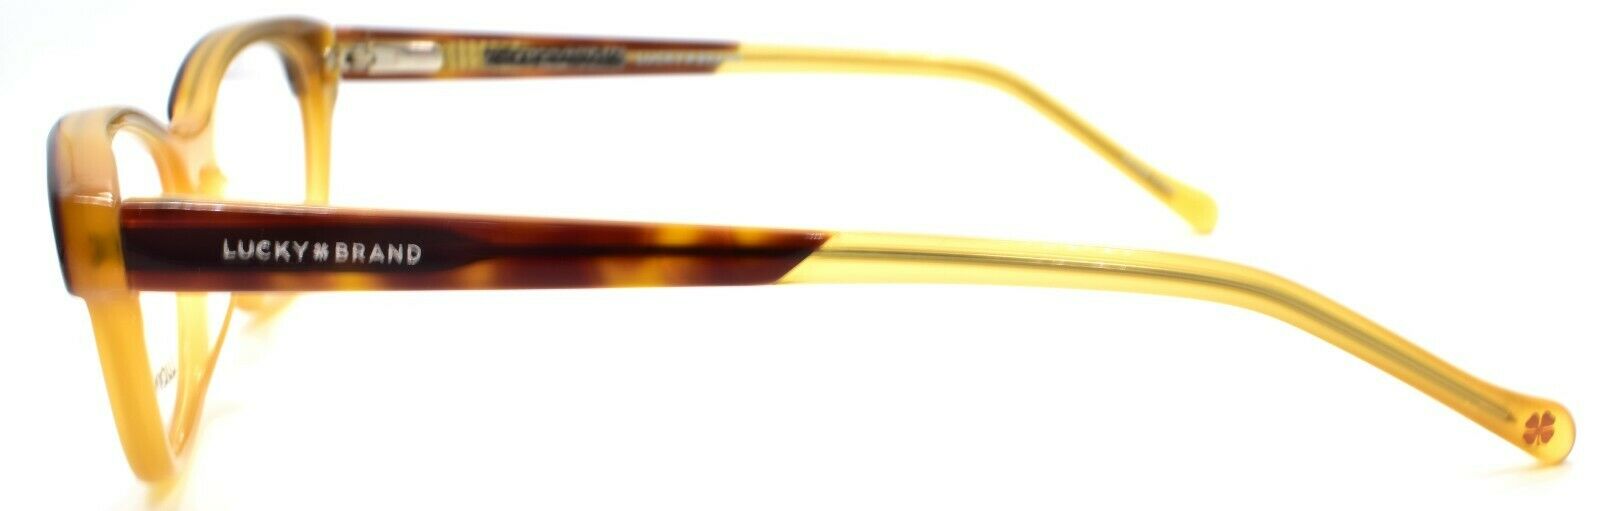 3-LUCKY BRAND D702 Kids Girls Eyeglasses Frames 47-15-130 Tortoise / Honey-751286282108-IKSpecs